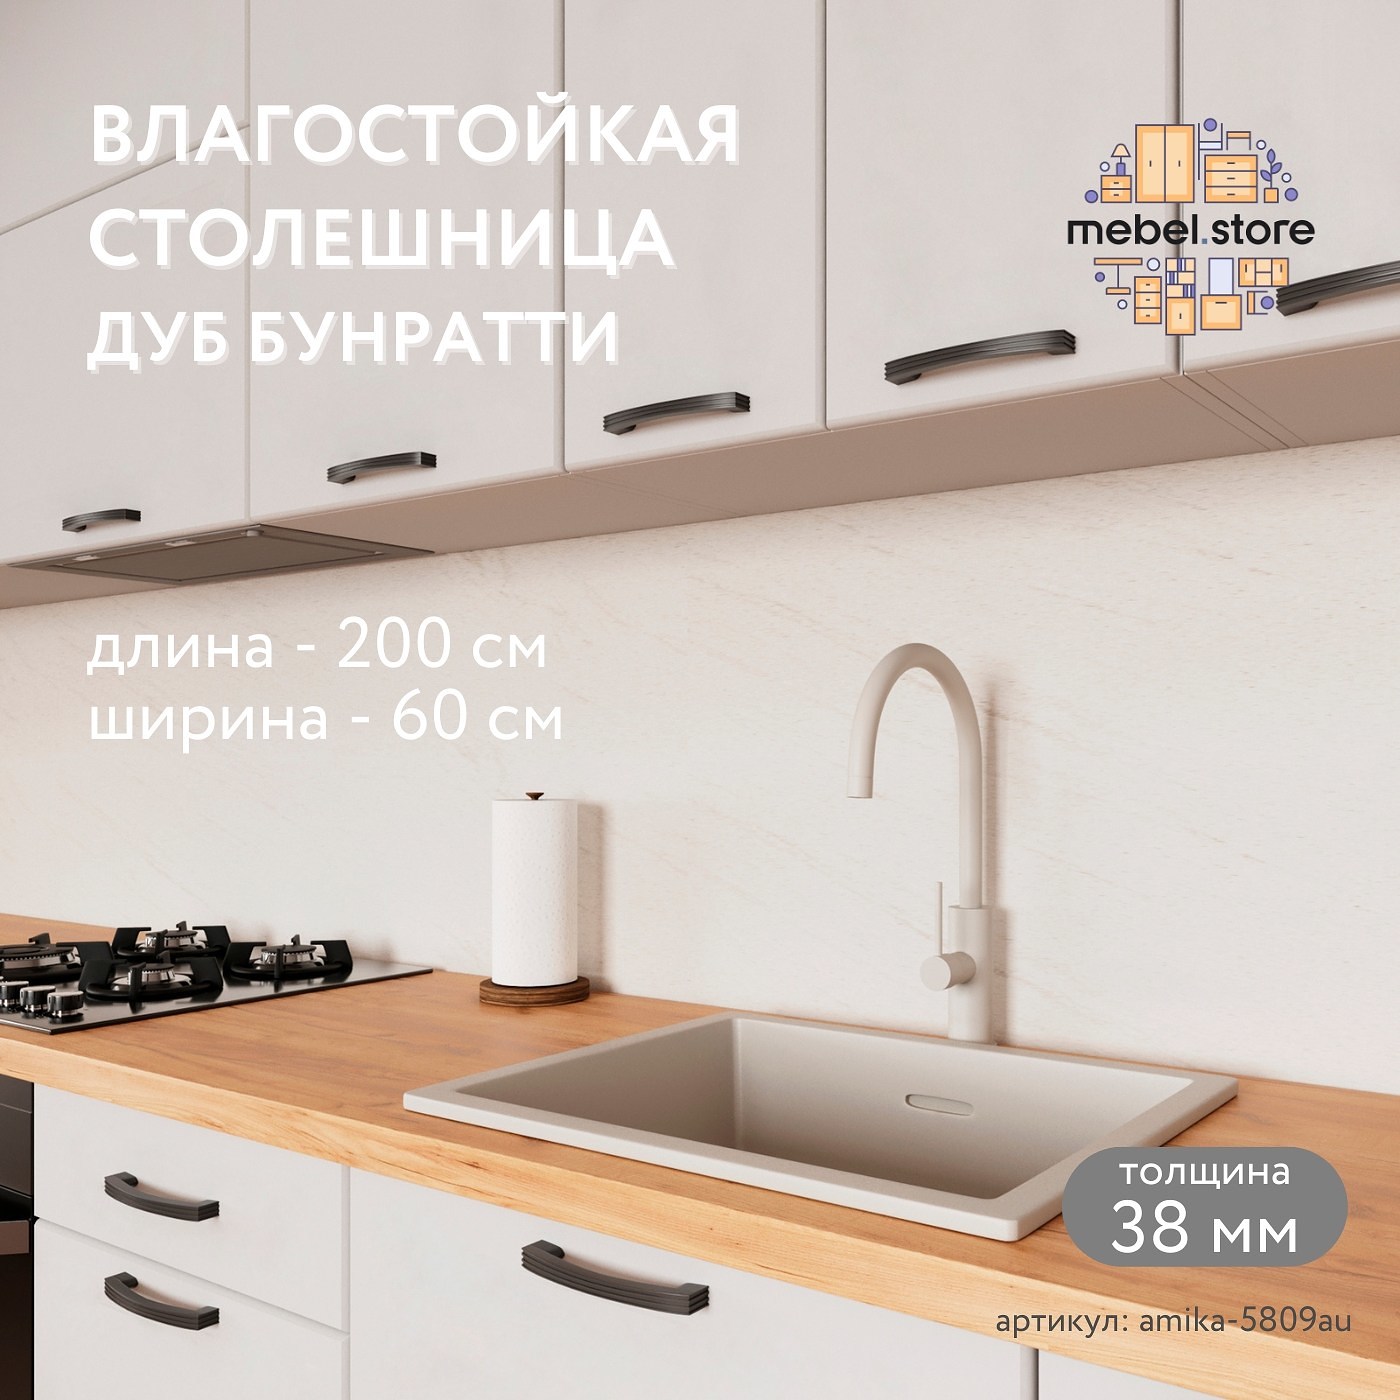 Столешница Амика-5809au минимализм для кухни - фото 1 large